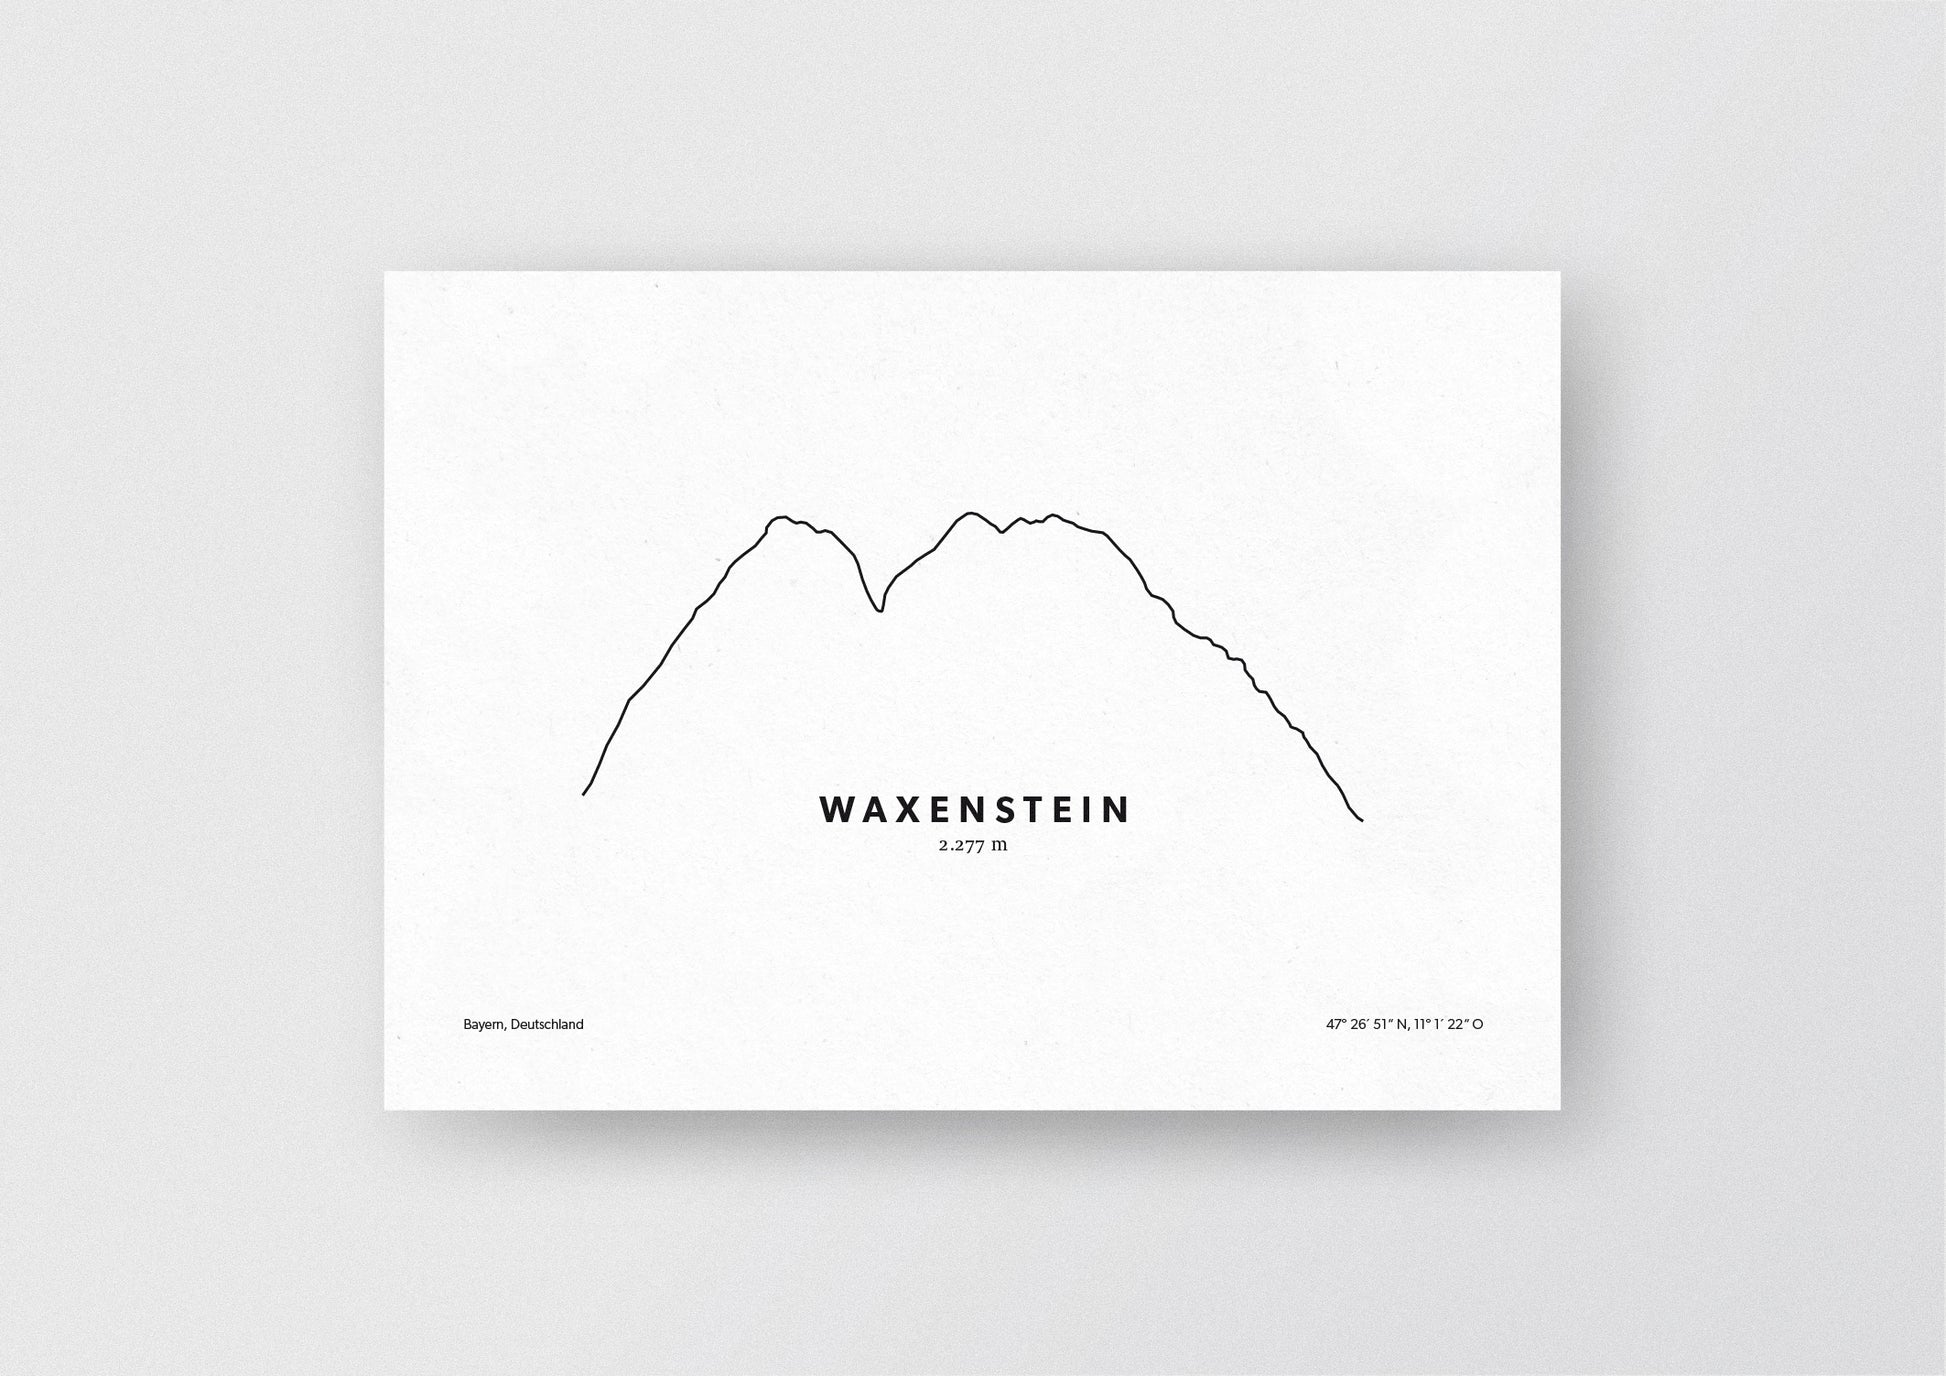 Minimalistische Illustration des Waxenstein im Wettersteingebirge, als stilvoller Einrichtungsgegenstand für Zuhause.